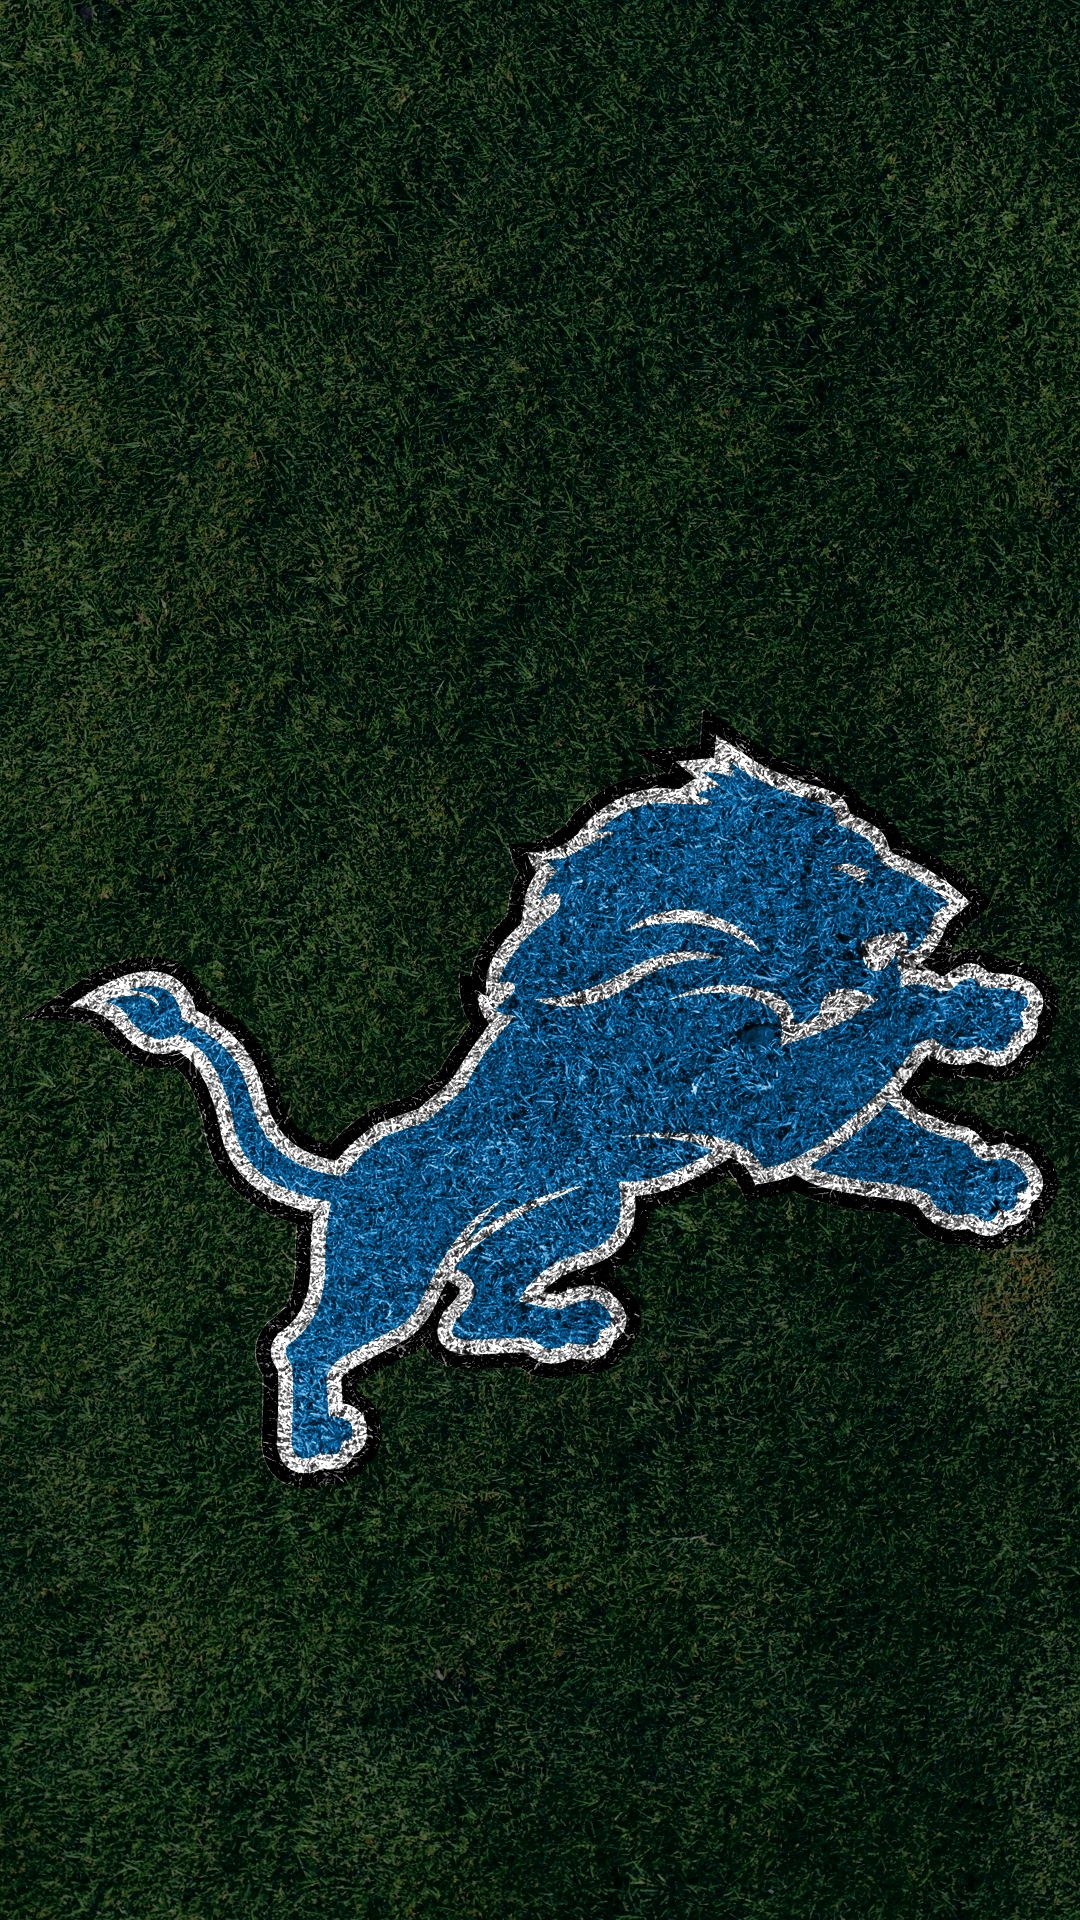 logo, sports, detroit lions, nfl, emblem, football